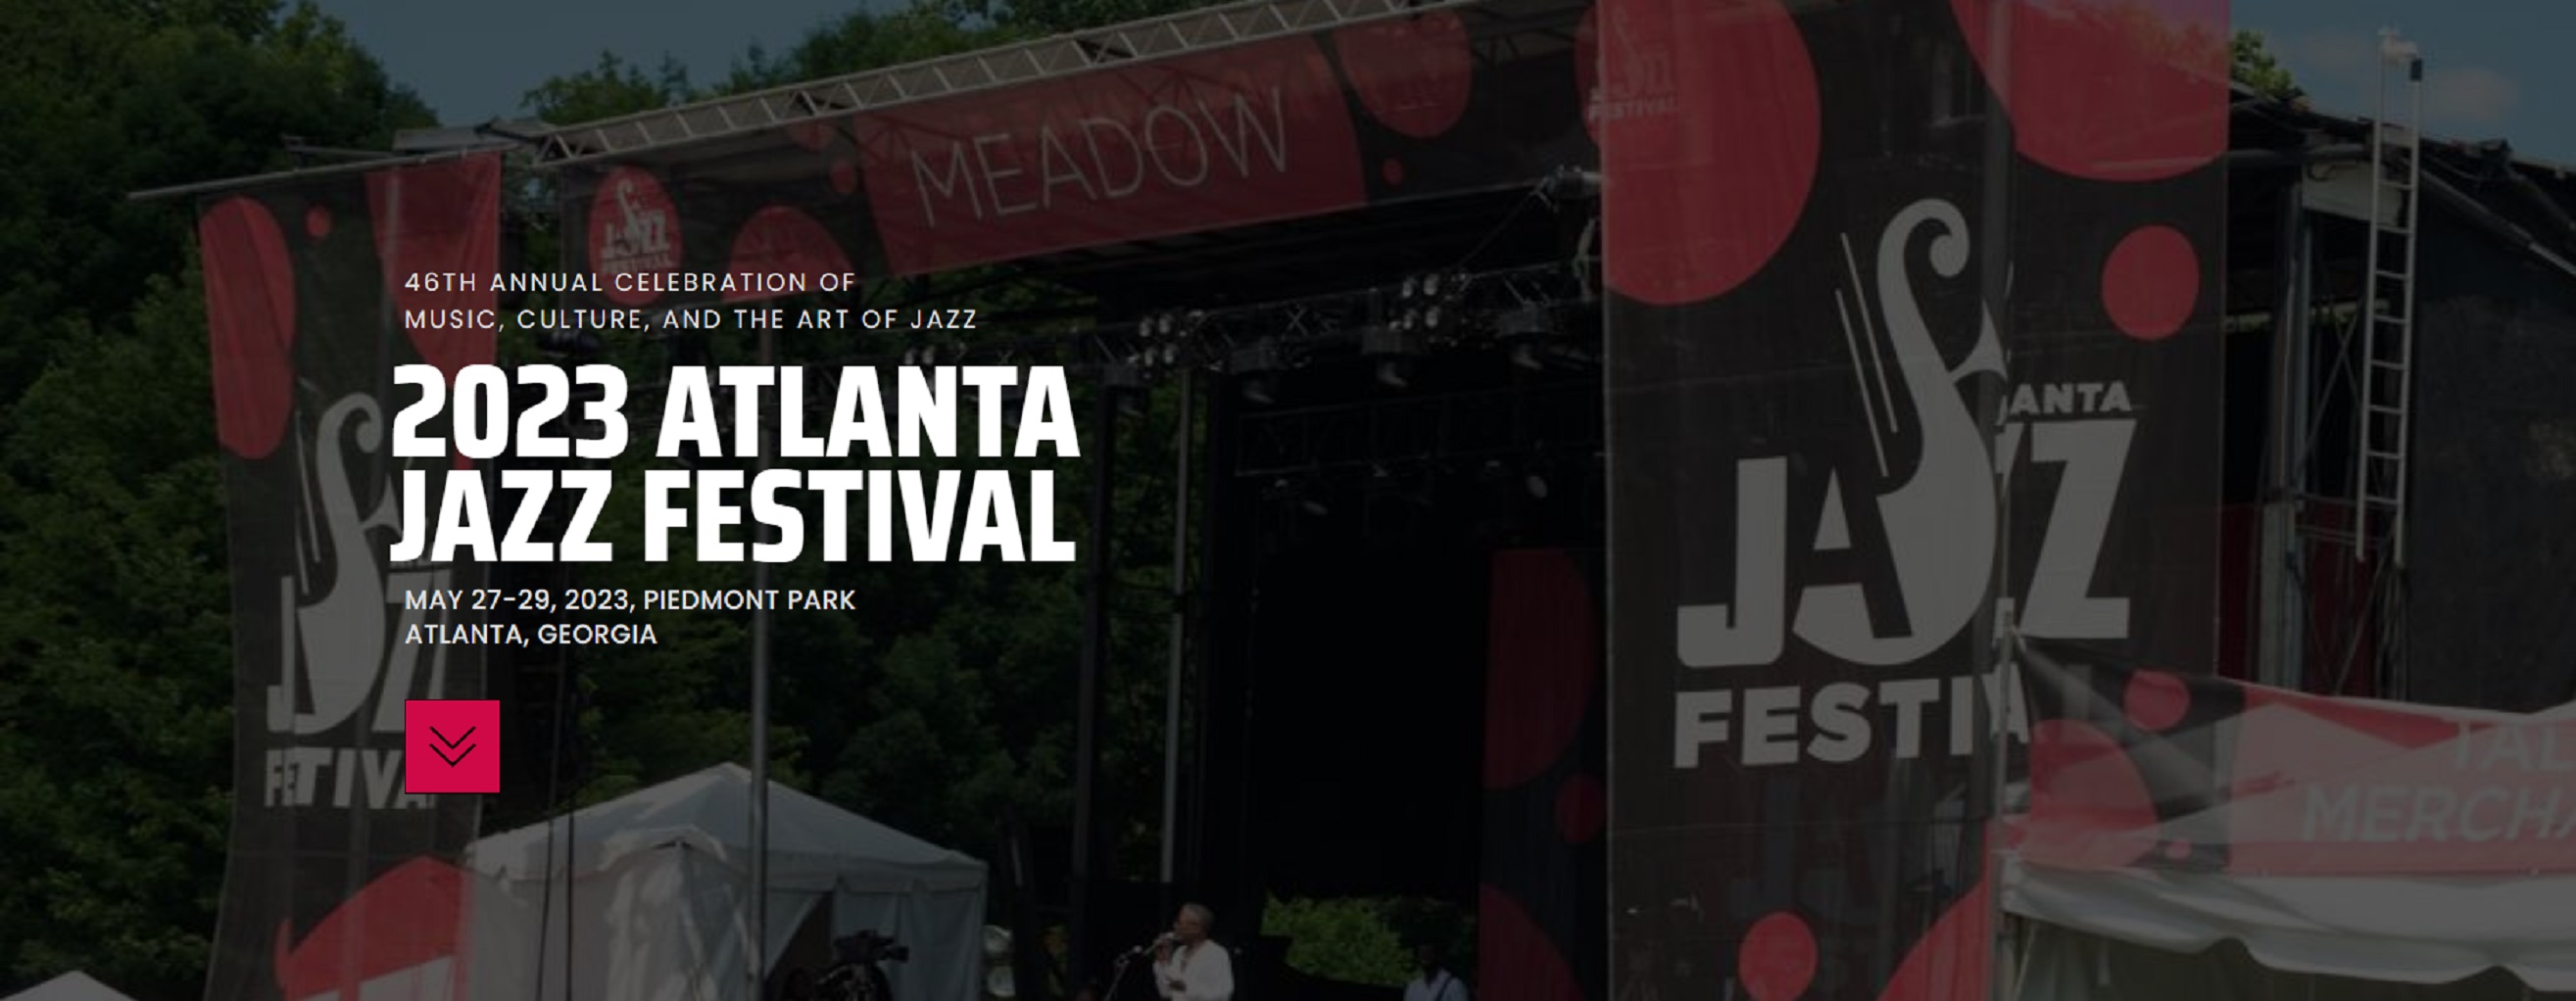 Atlanta Jazz Festival 2023 Announces Lineup in Piedmont Park